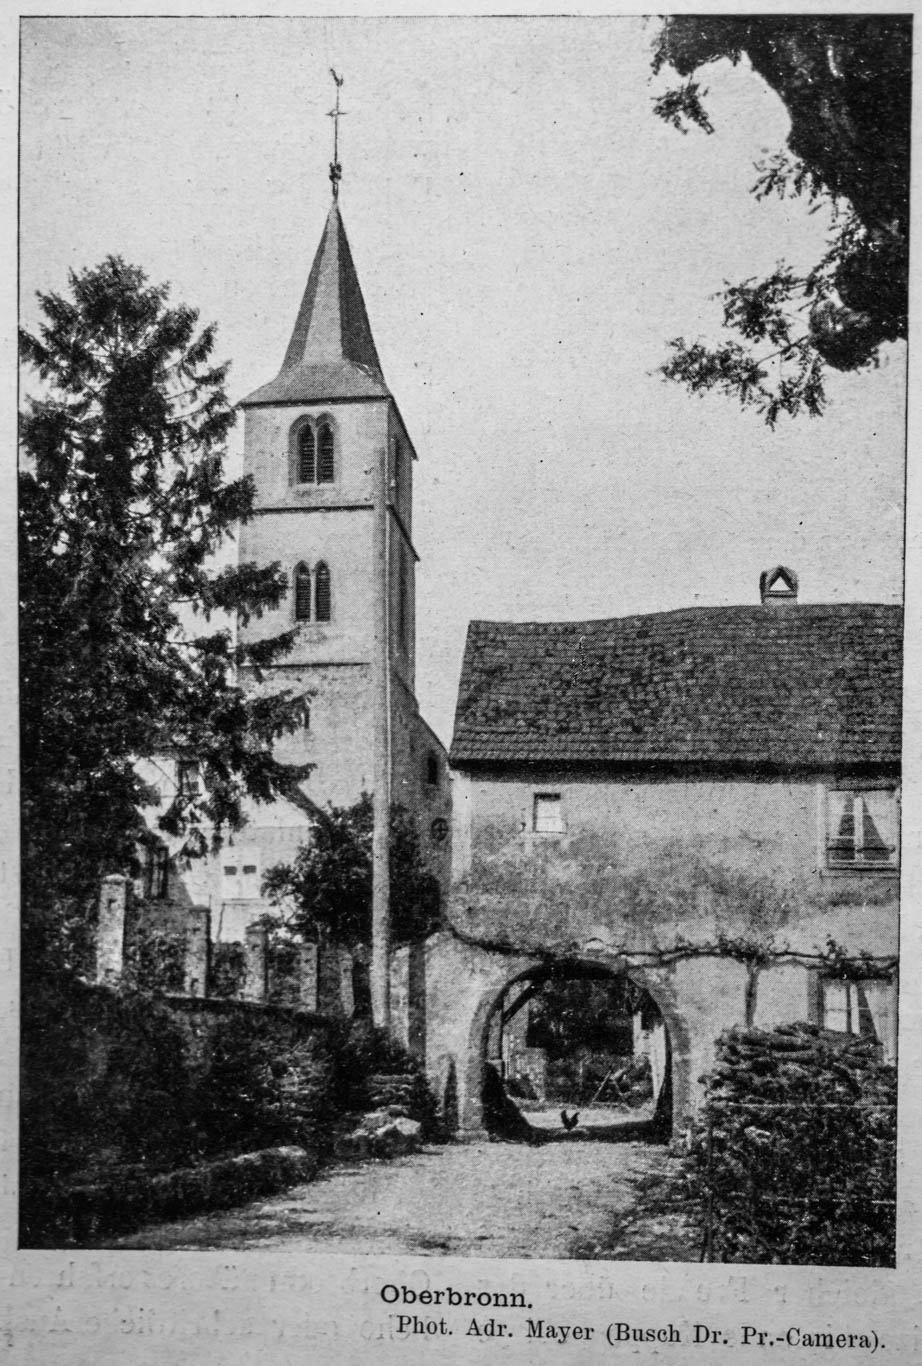 Station 22 - Evangelische Kirche von 1505 Abbildung aus 'Die Vogesen' von 1910 (Band 4) Nr. 14